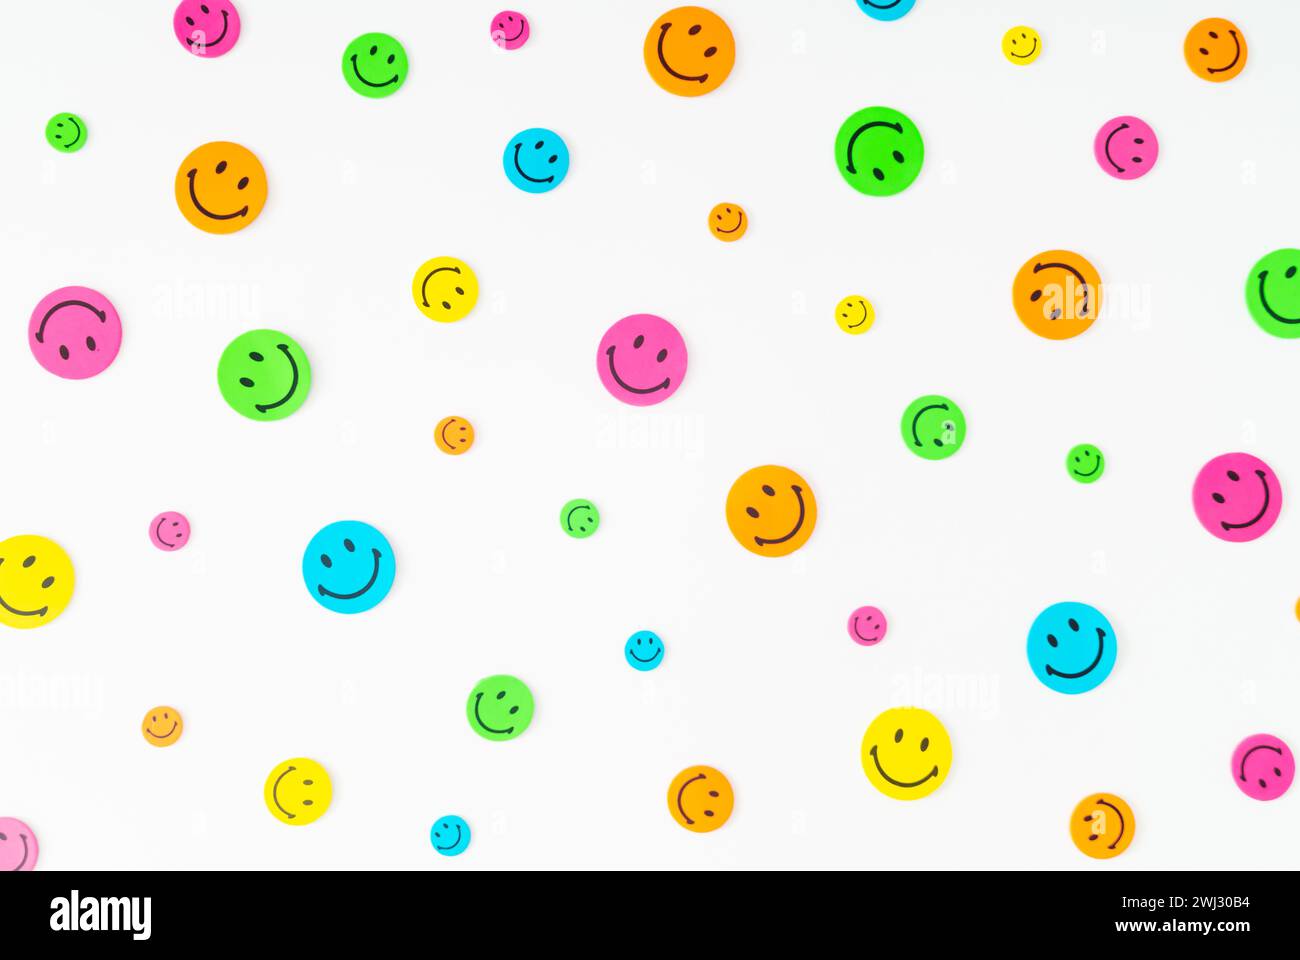 Farbenfrohe Musterkomposition mit Smiley-Aufklebern auf weißem Hintergrund. Minimales positives Denken und gute Stimmung. Stockfoto